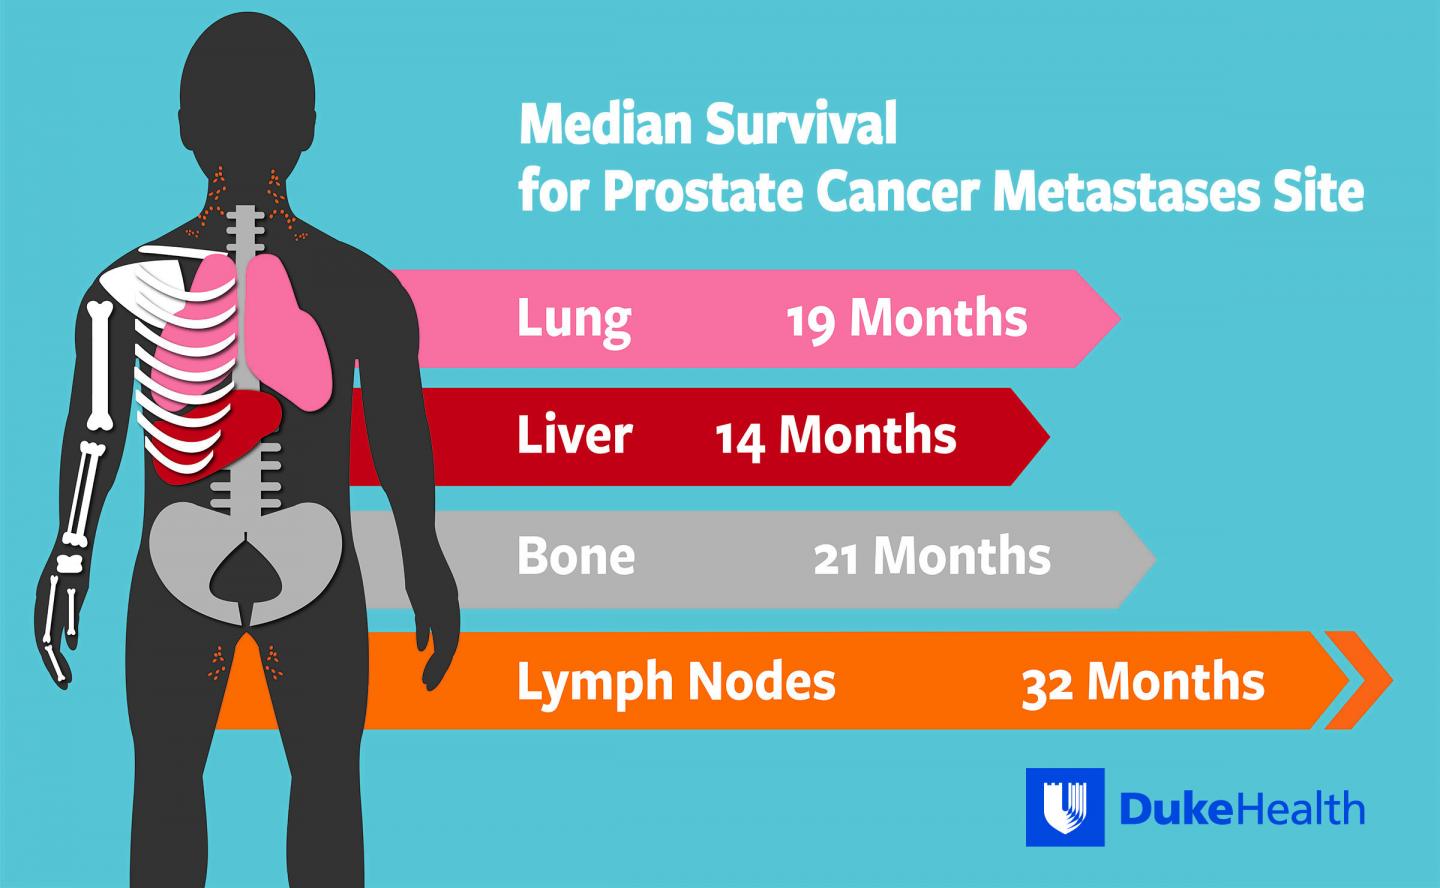 Median Survival for Prostate Cancer Metastases Site